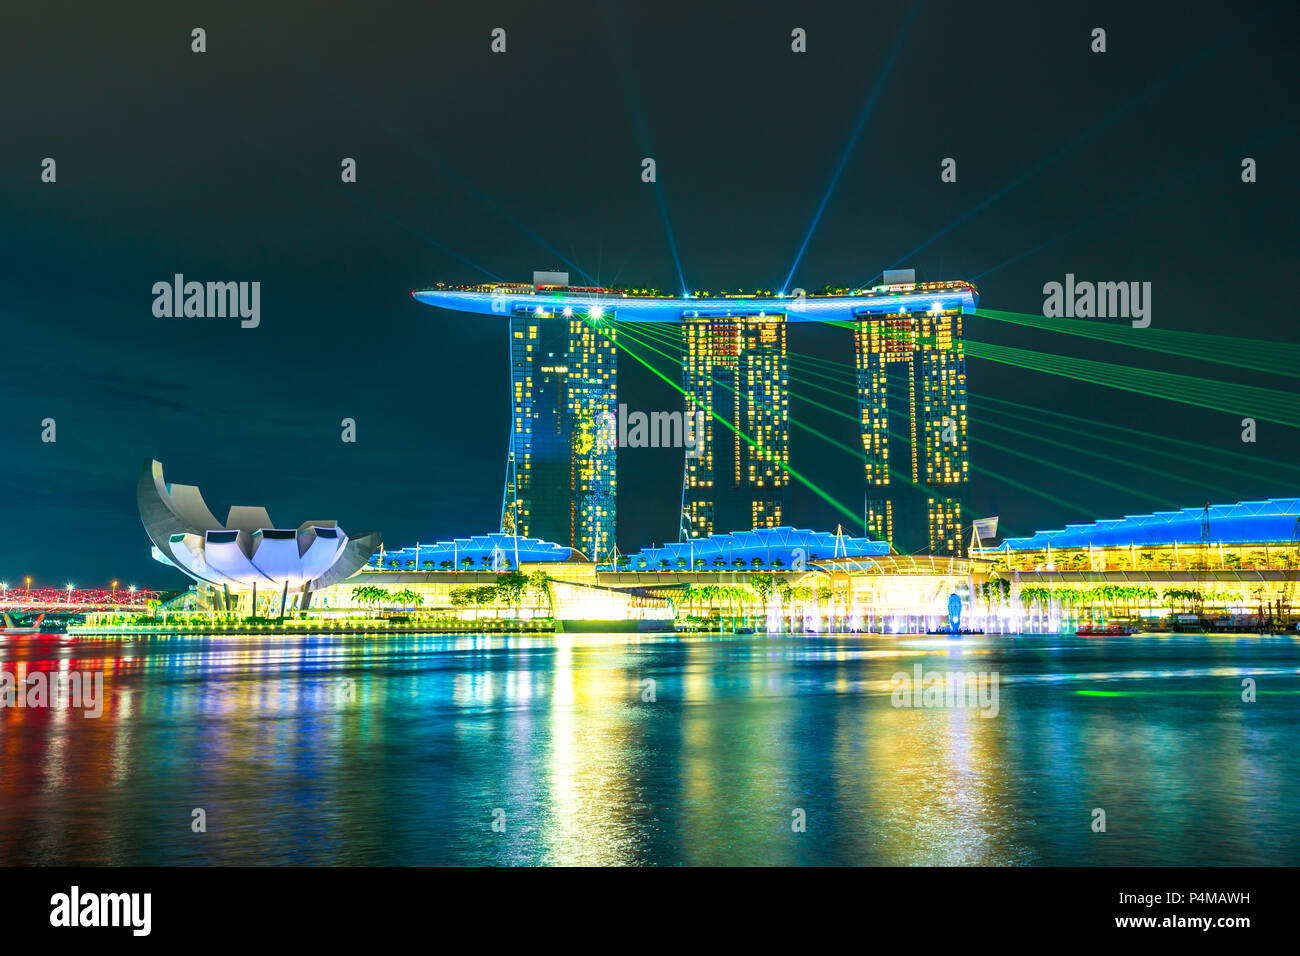 Singapur - Abril 27, 2018: icónico Marina Bay Sands con luces de colores durante el espectáculo de láser en el puerto de Singapur. La noche escenas coloridas waterfront. Atracción turística popular en la zona de Marina Bay. Foto de stock